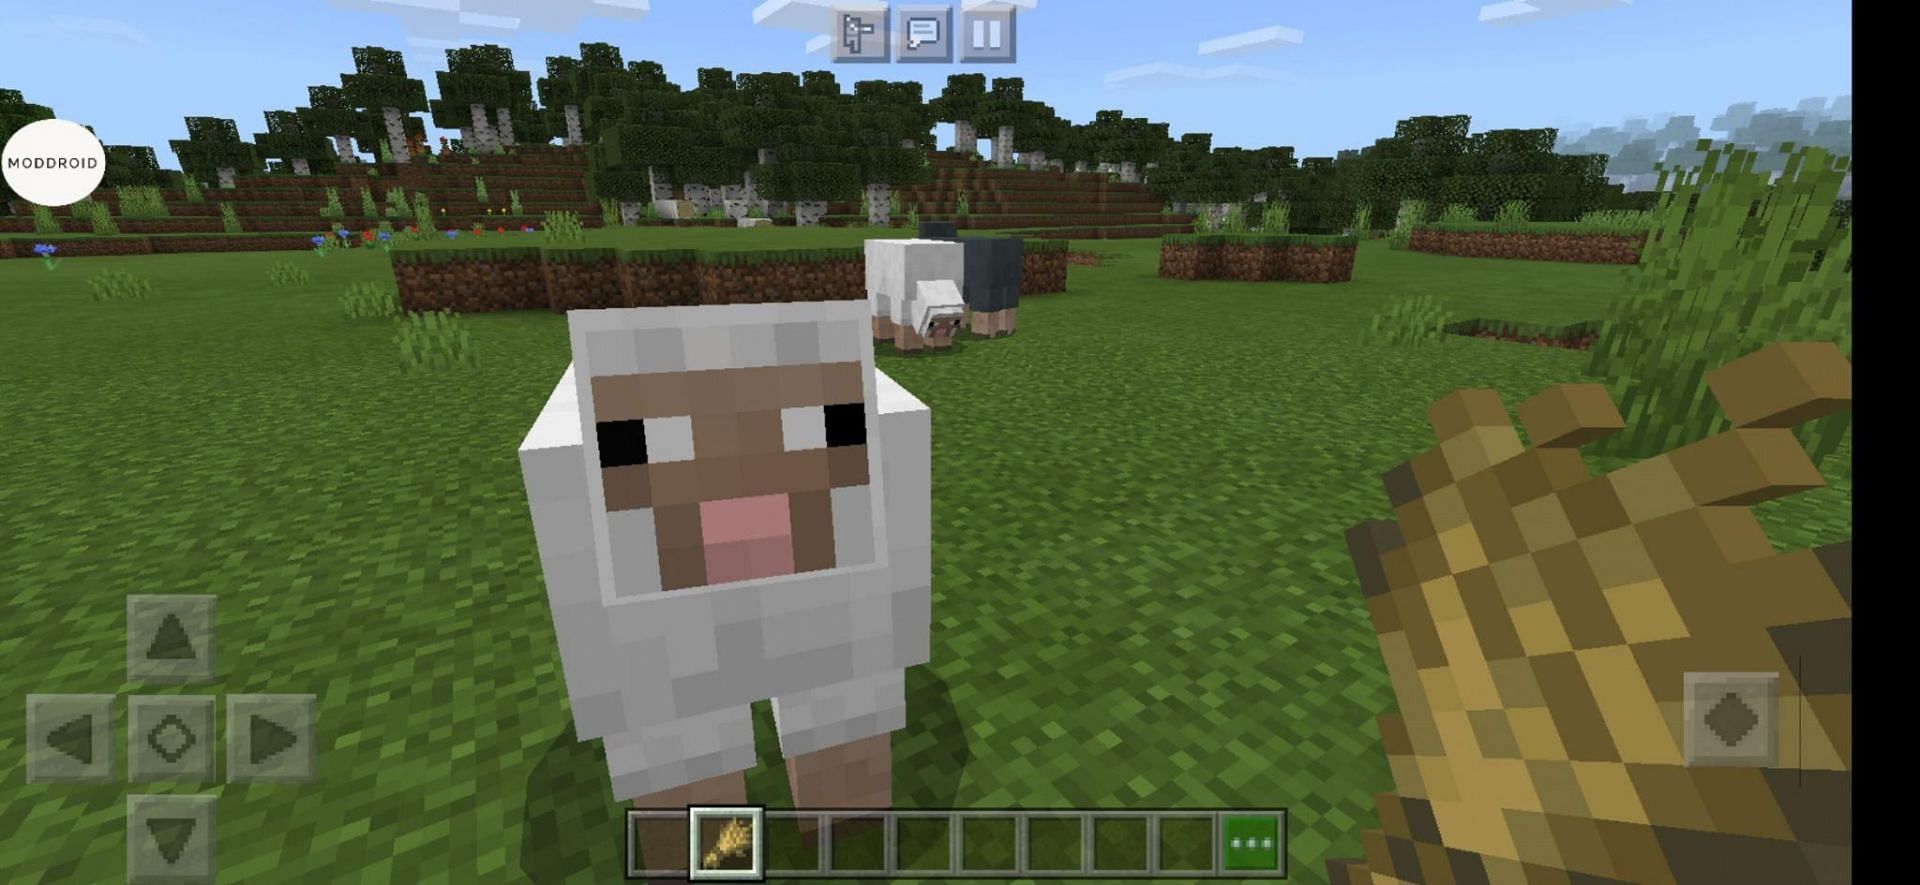 Sheep like wheat (Image via Mojang)